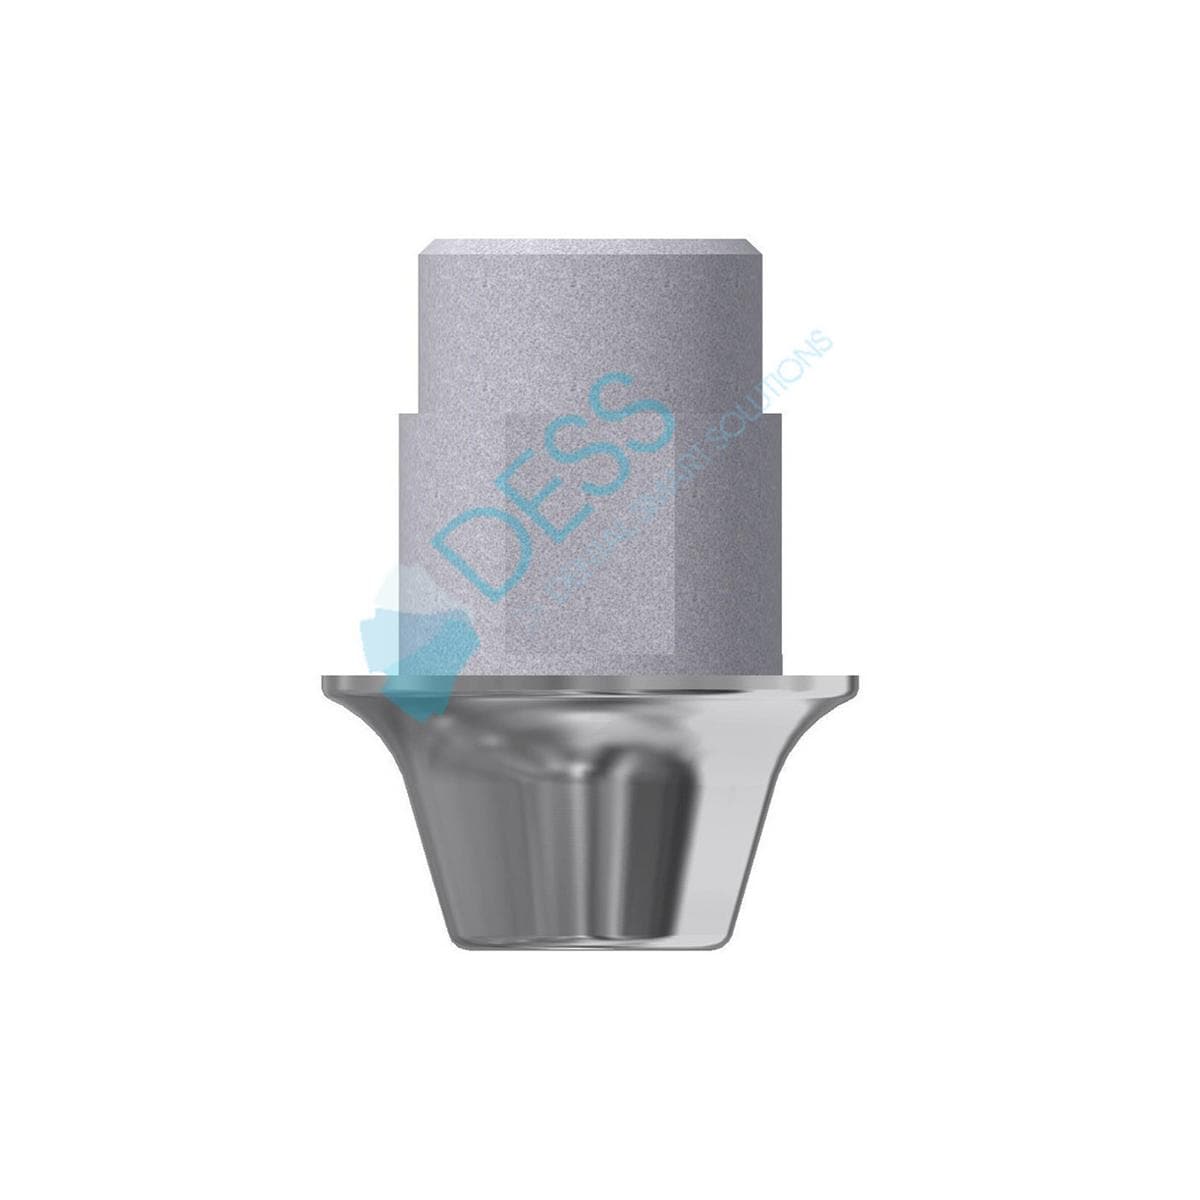 Titanbase - kompatibel mit Straumann® Bone Level® - RC Ø 4,1 mm, ohne Rotationsschutz